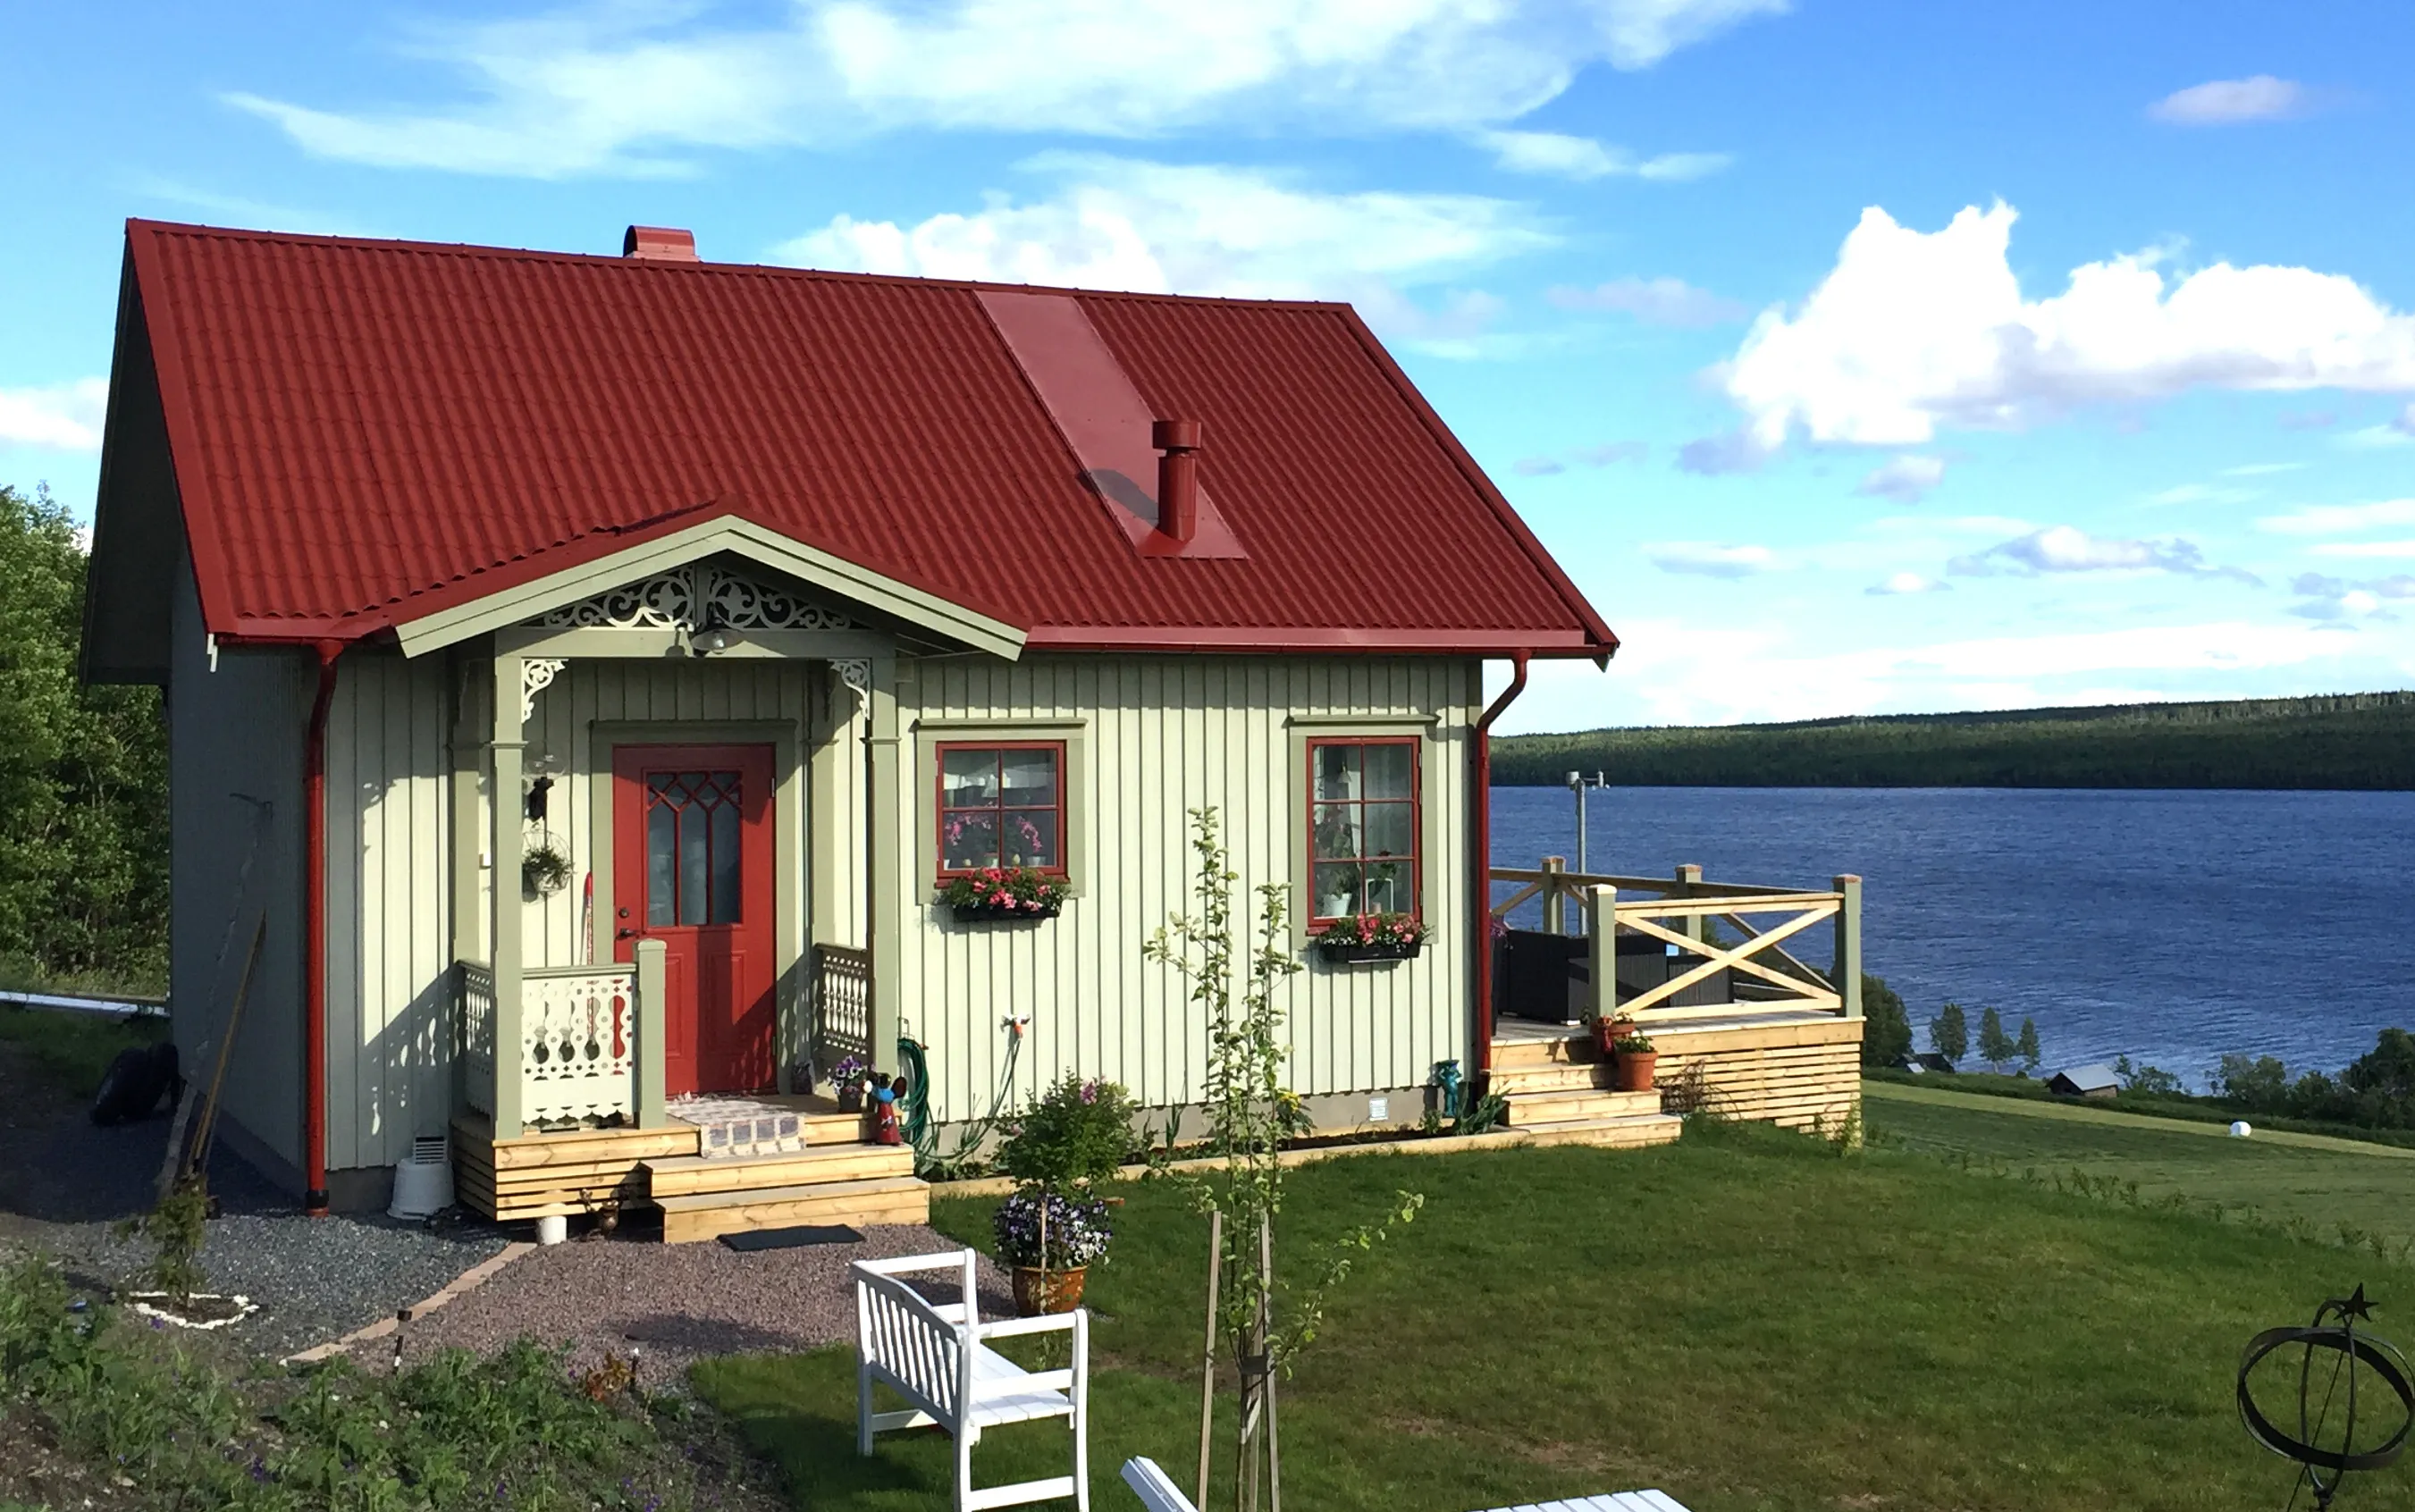 Eine Veranda, inspiriert vom Jahrhundertwechsel und dem 19. Jahrhundert - Hausdekoration und Dekoration für den Dachfirst - hergestellt in Schweden - einzigartiges Design.